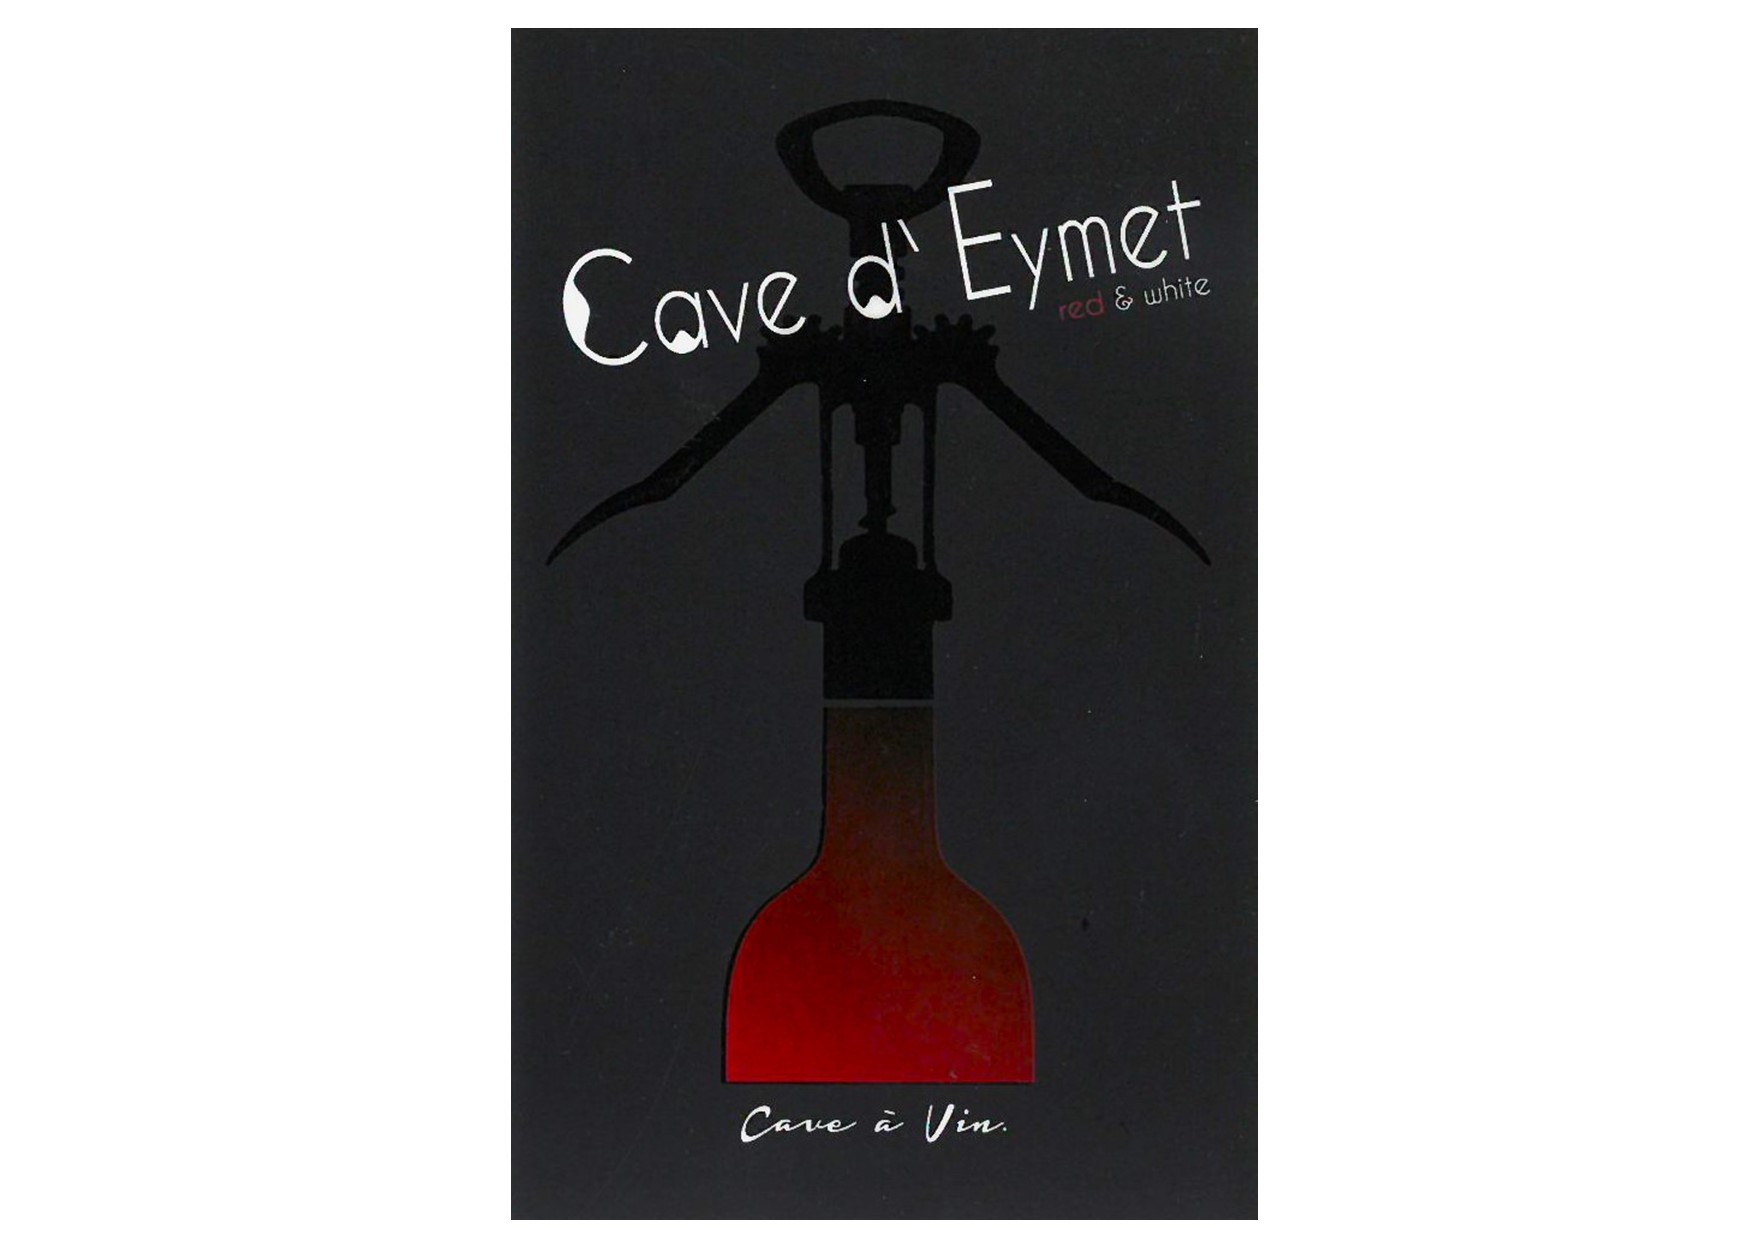 La Cave d'Eymet